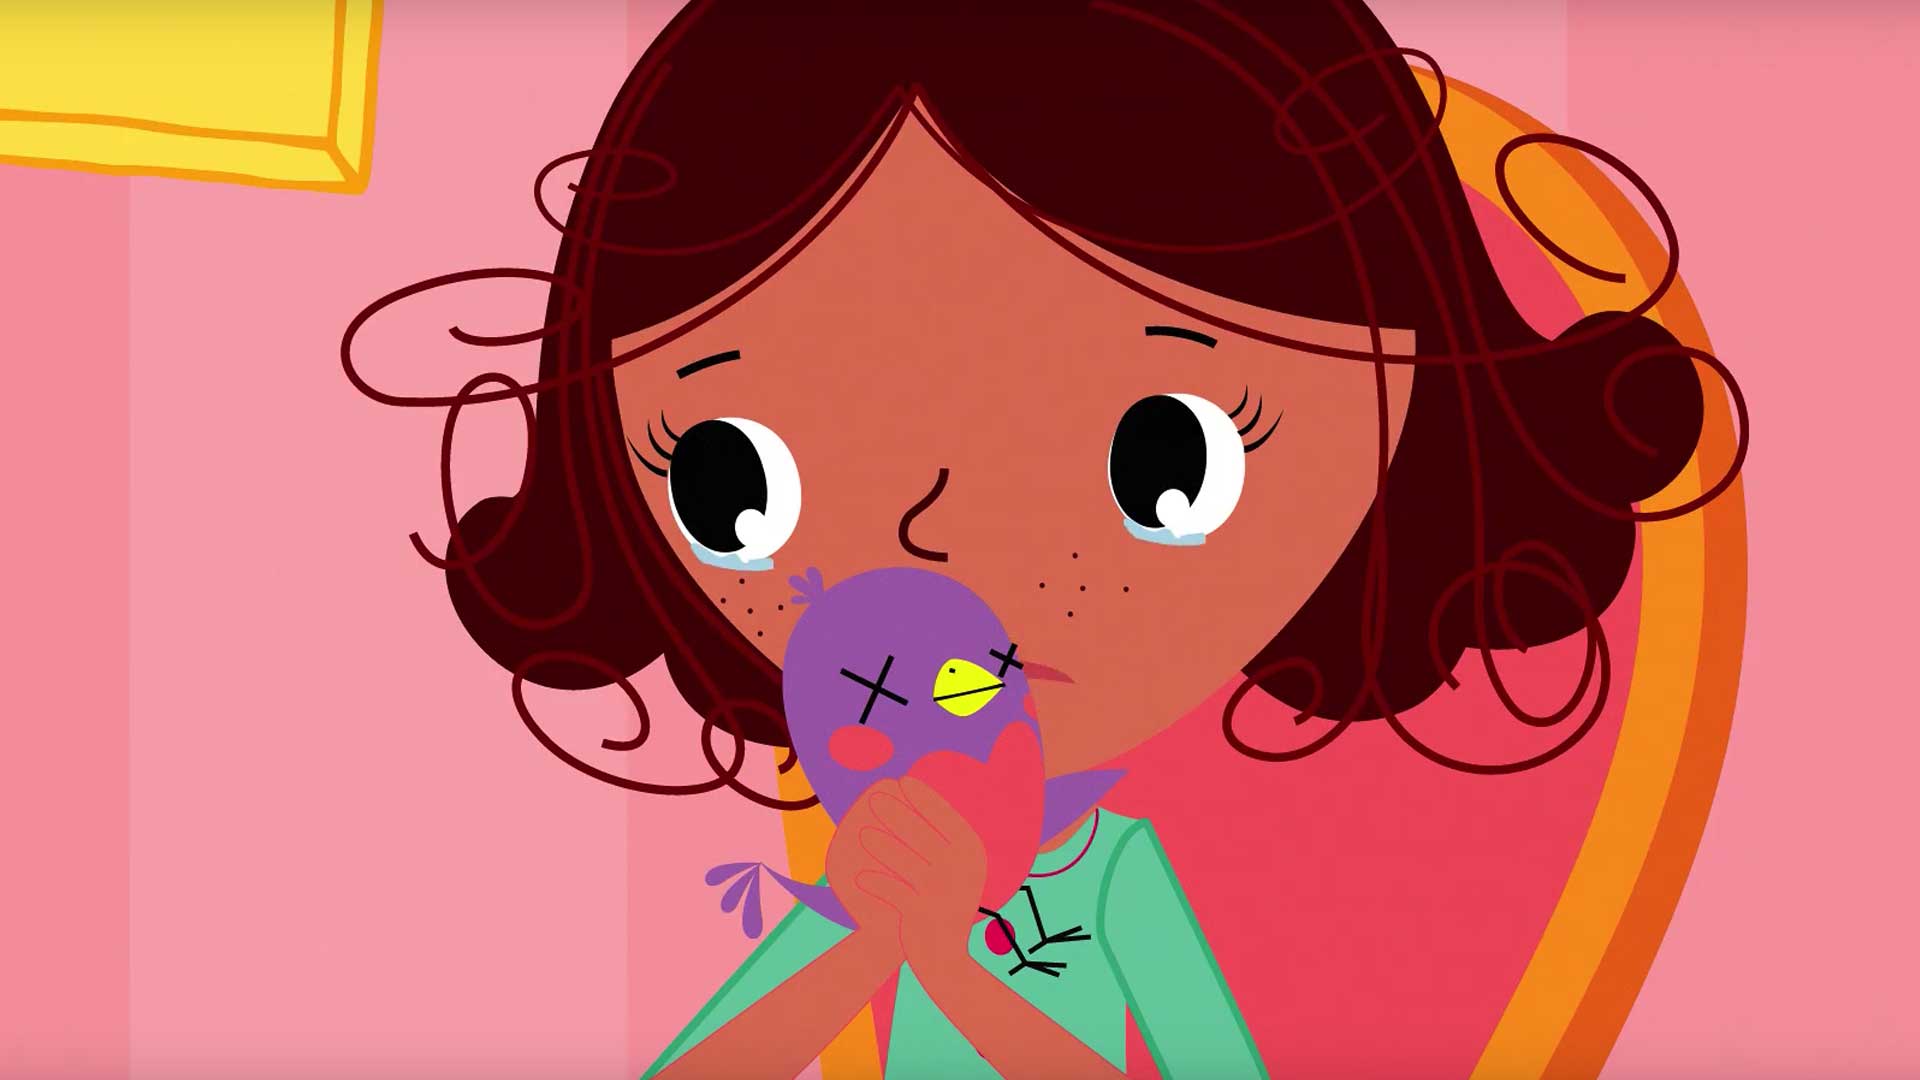 Ilustração de uma criança com os olhos cheios de lágrimas. Ela está segurando um pintinho em suas mãos e beijando-o